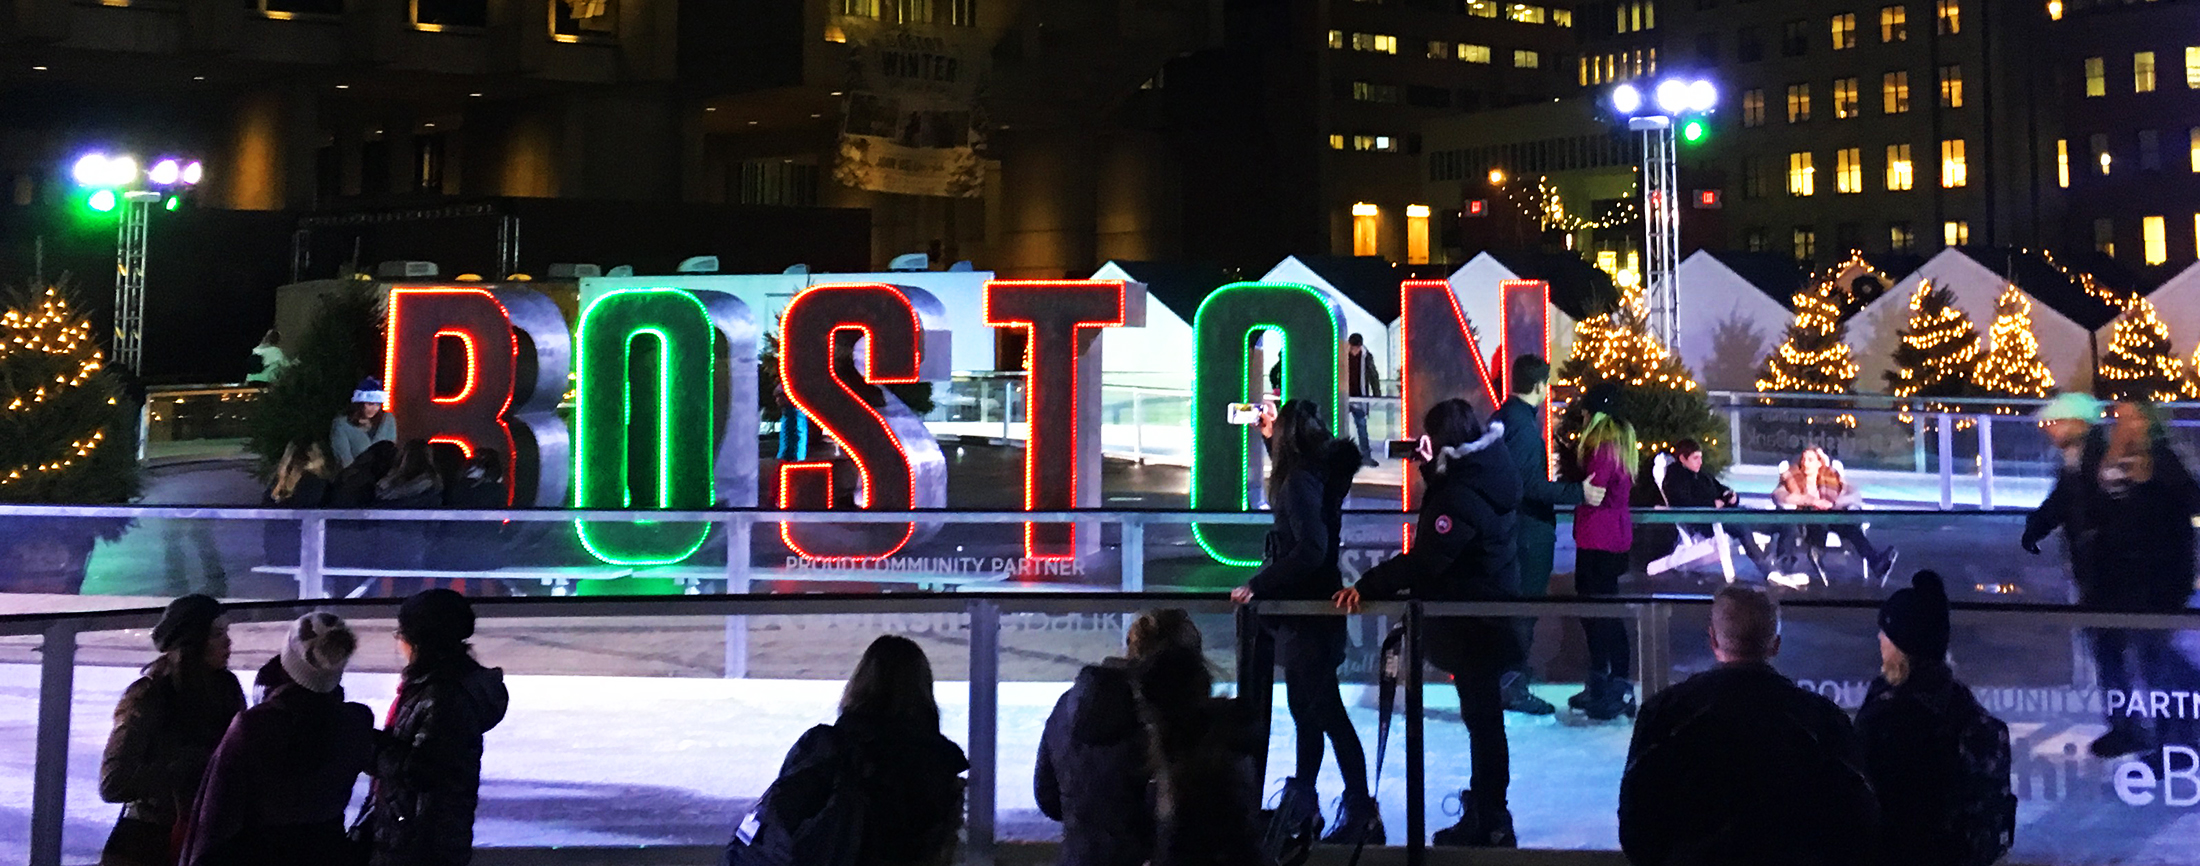 Winter Activities in Boston